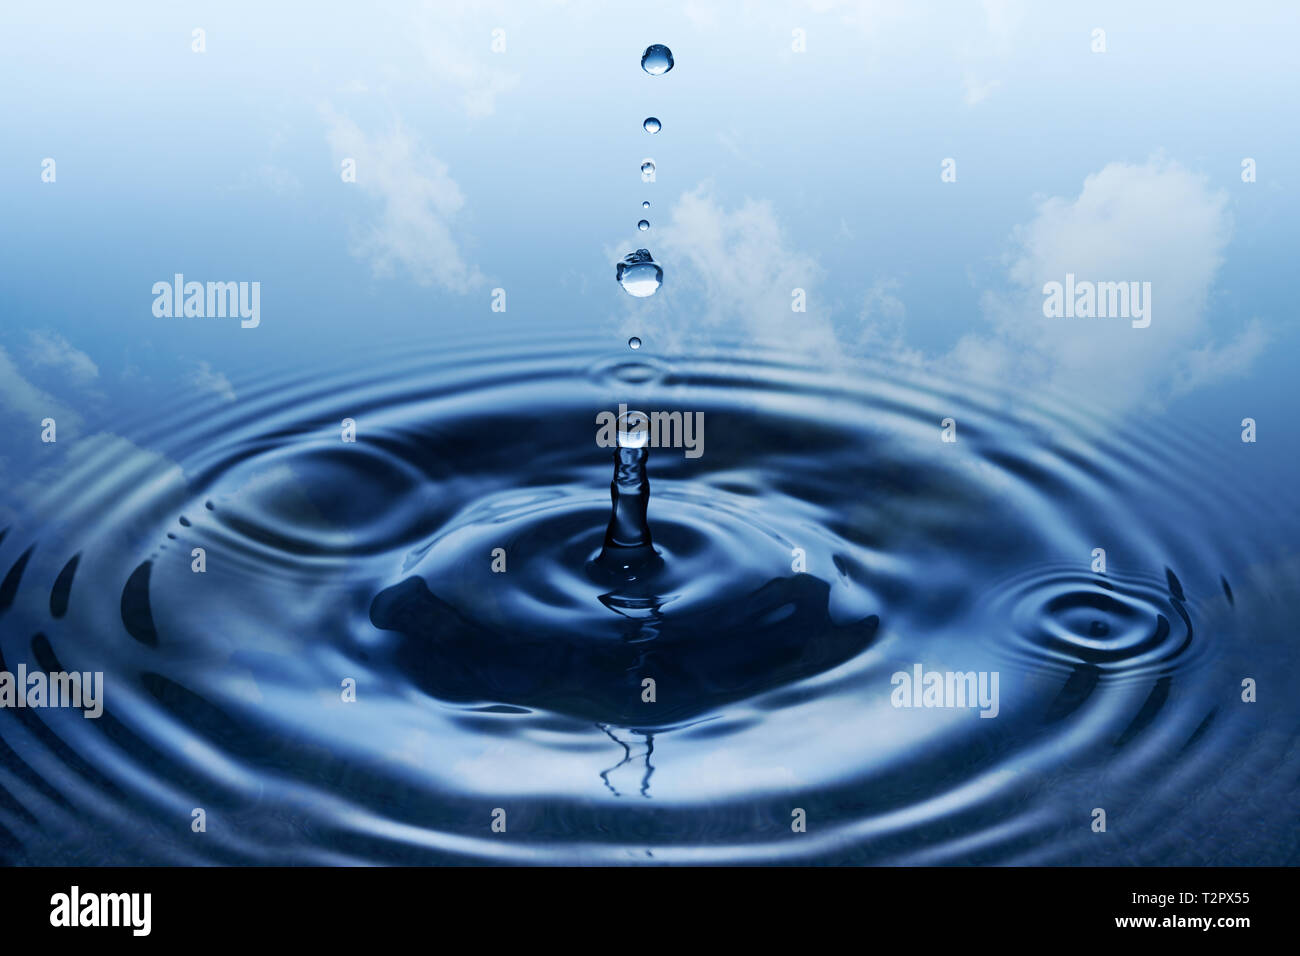 Splash. Round delle gocce di pioggia caduta sulla superficie liscia dell'acqua. Cielo blu e nuvole bianche in background. Foto Stock